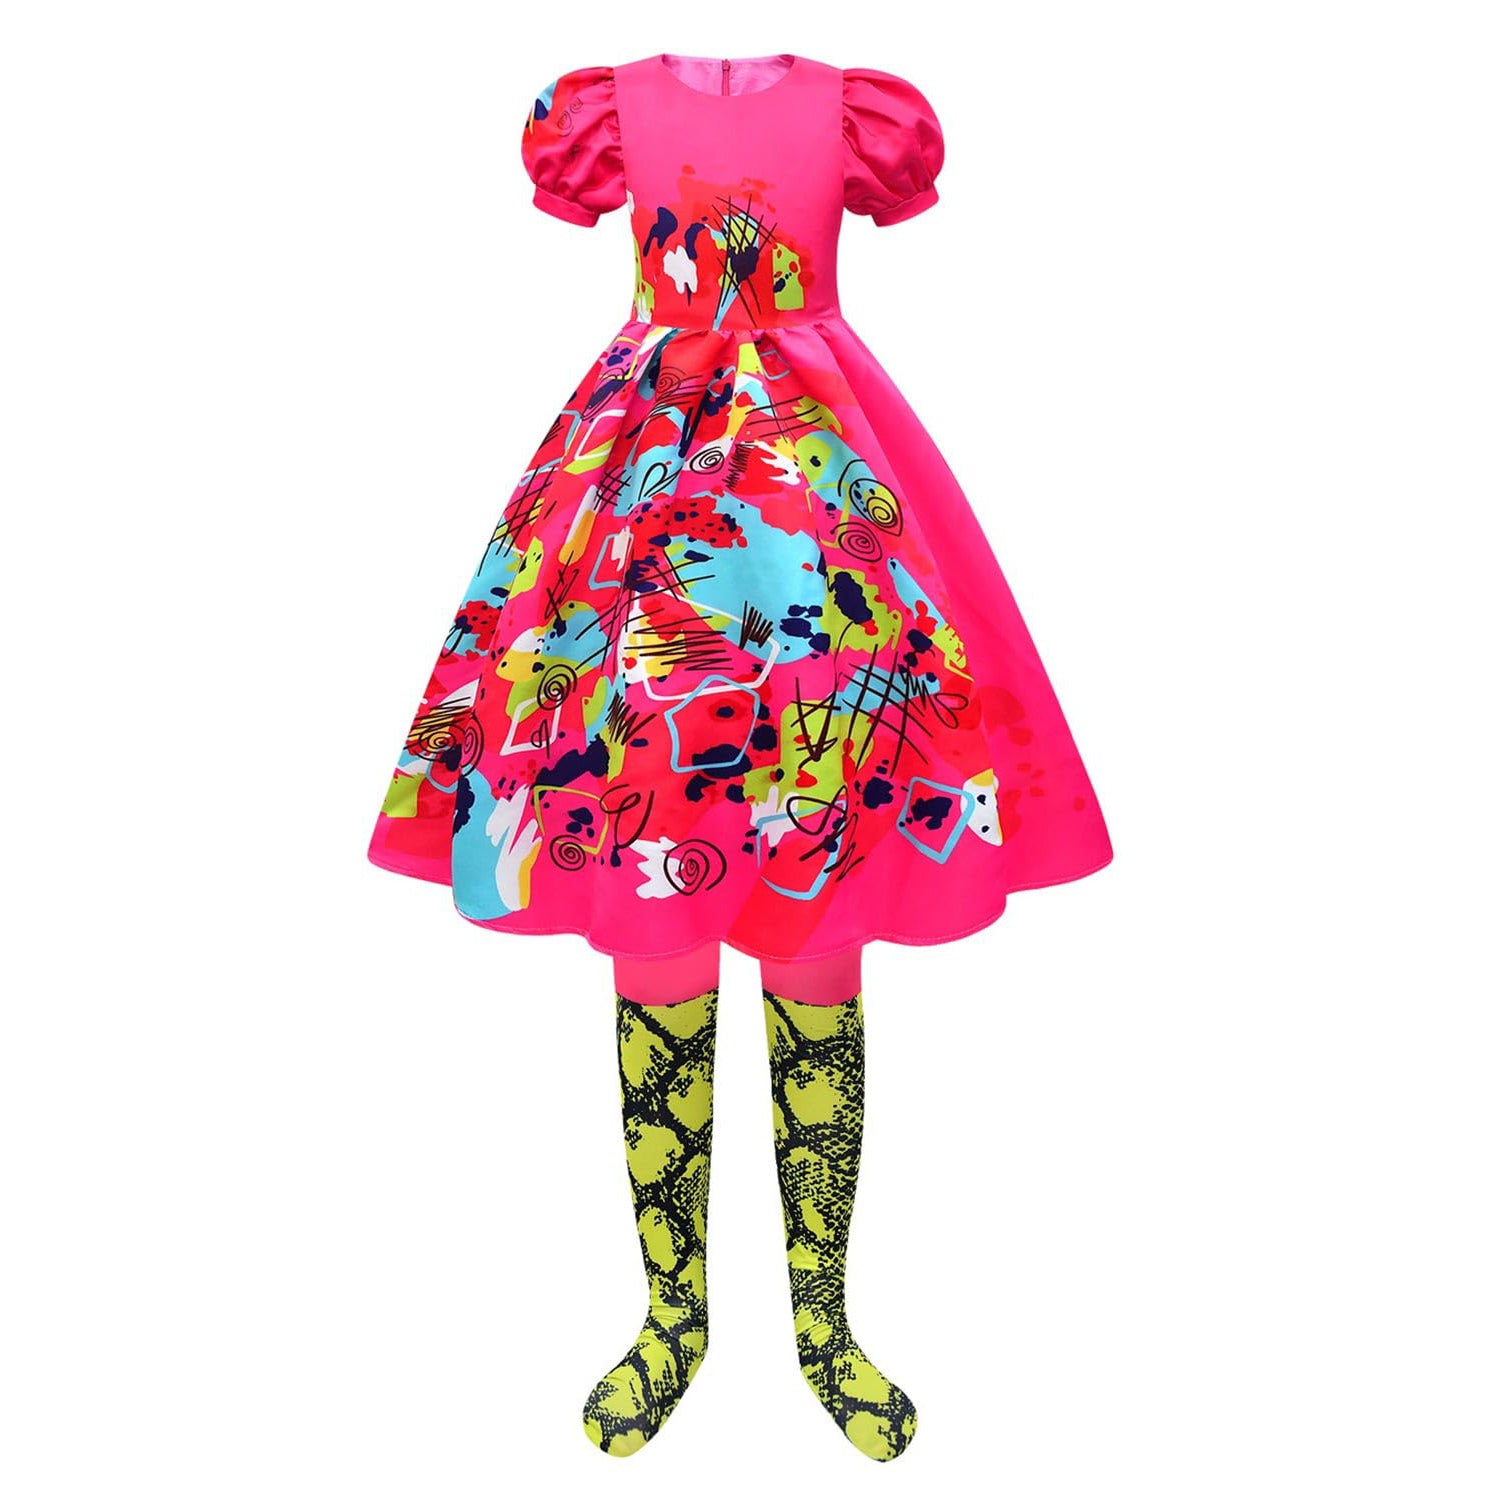 Weird Barbiecore Dress Kate McKinnon Cosplay Costume Hot Pink Puff Sleeve Dress